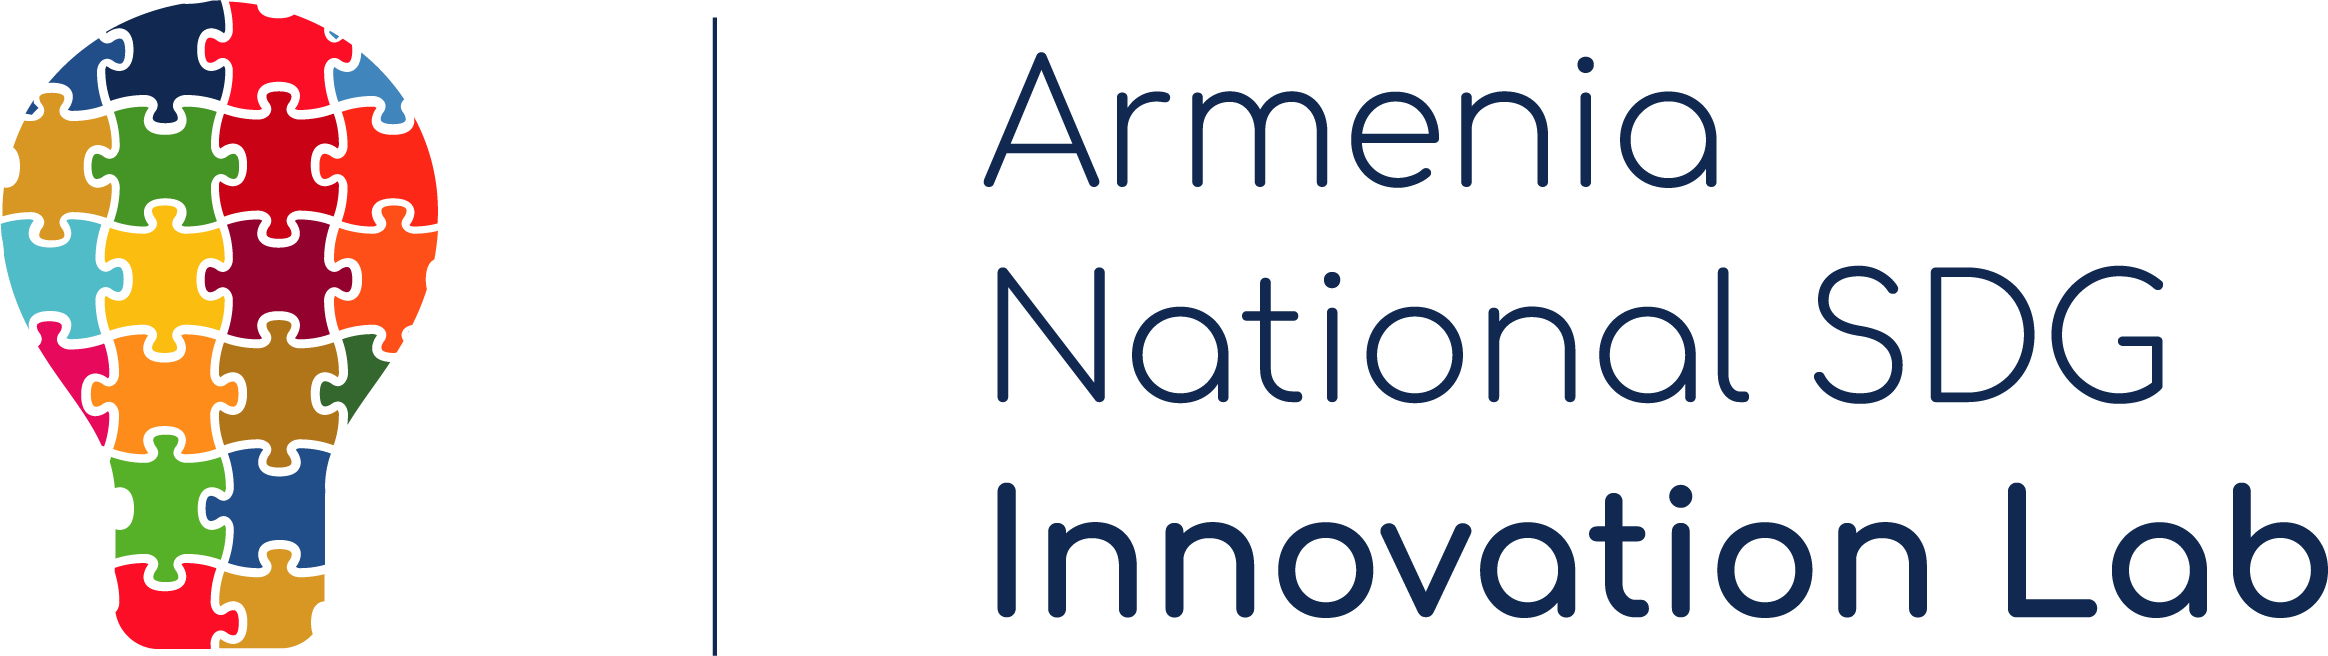 Armenia National SDG Innovation Lab